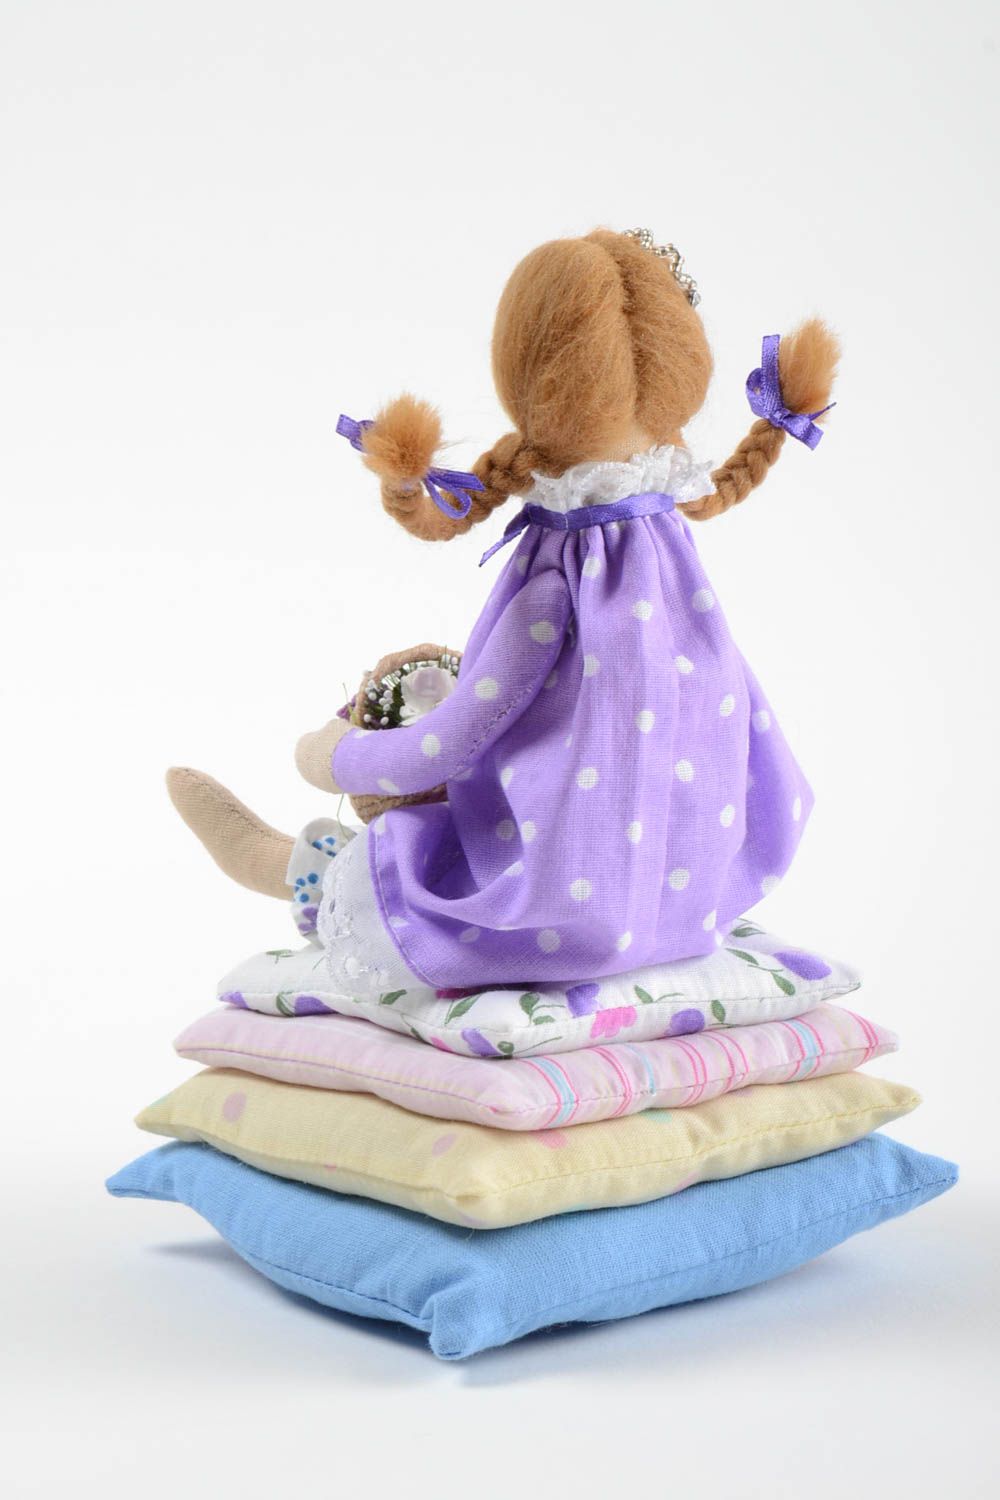 Интерьерная игрушка из хлопка мягкая авторская ручной работы Принцесса с цветами фото 4